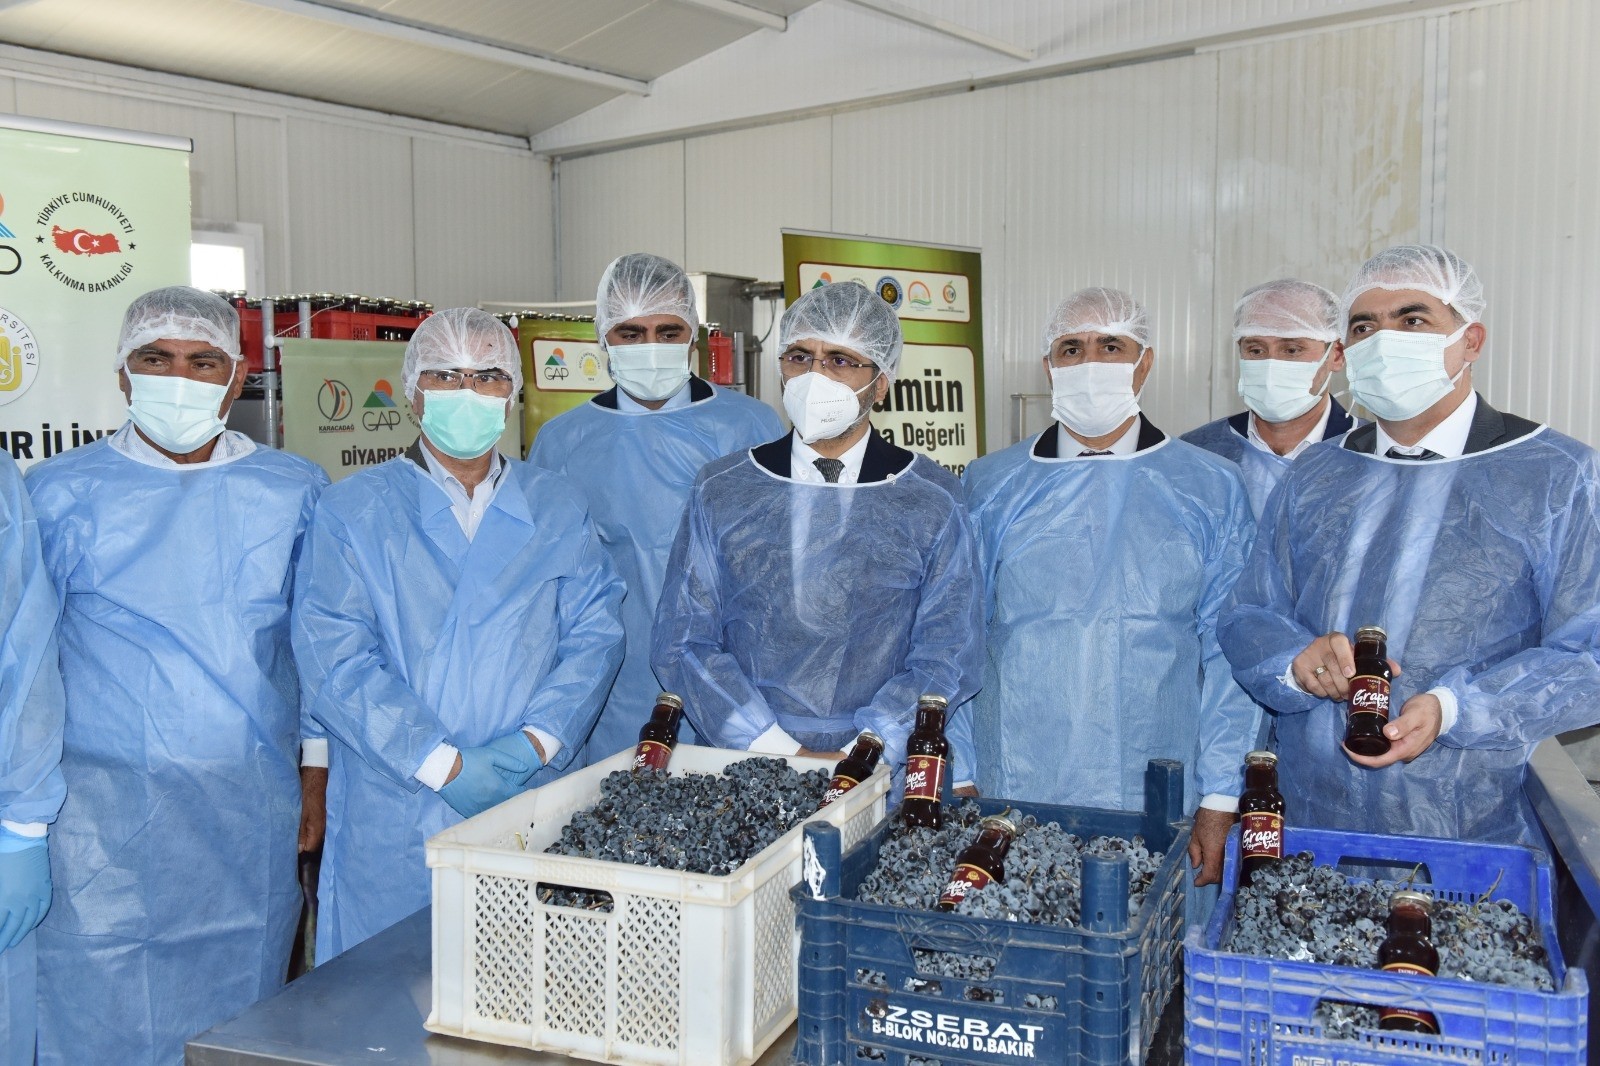 DÜ Ziraat Fakültesi üzüm ürünleri işleme tesisi açılışı ve tadım etkinliği yapıldı